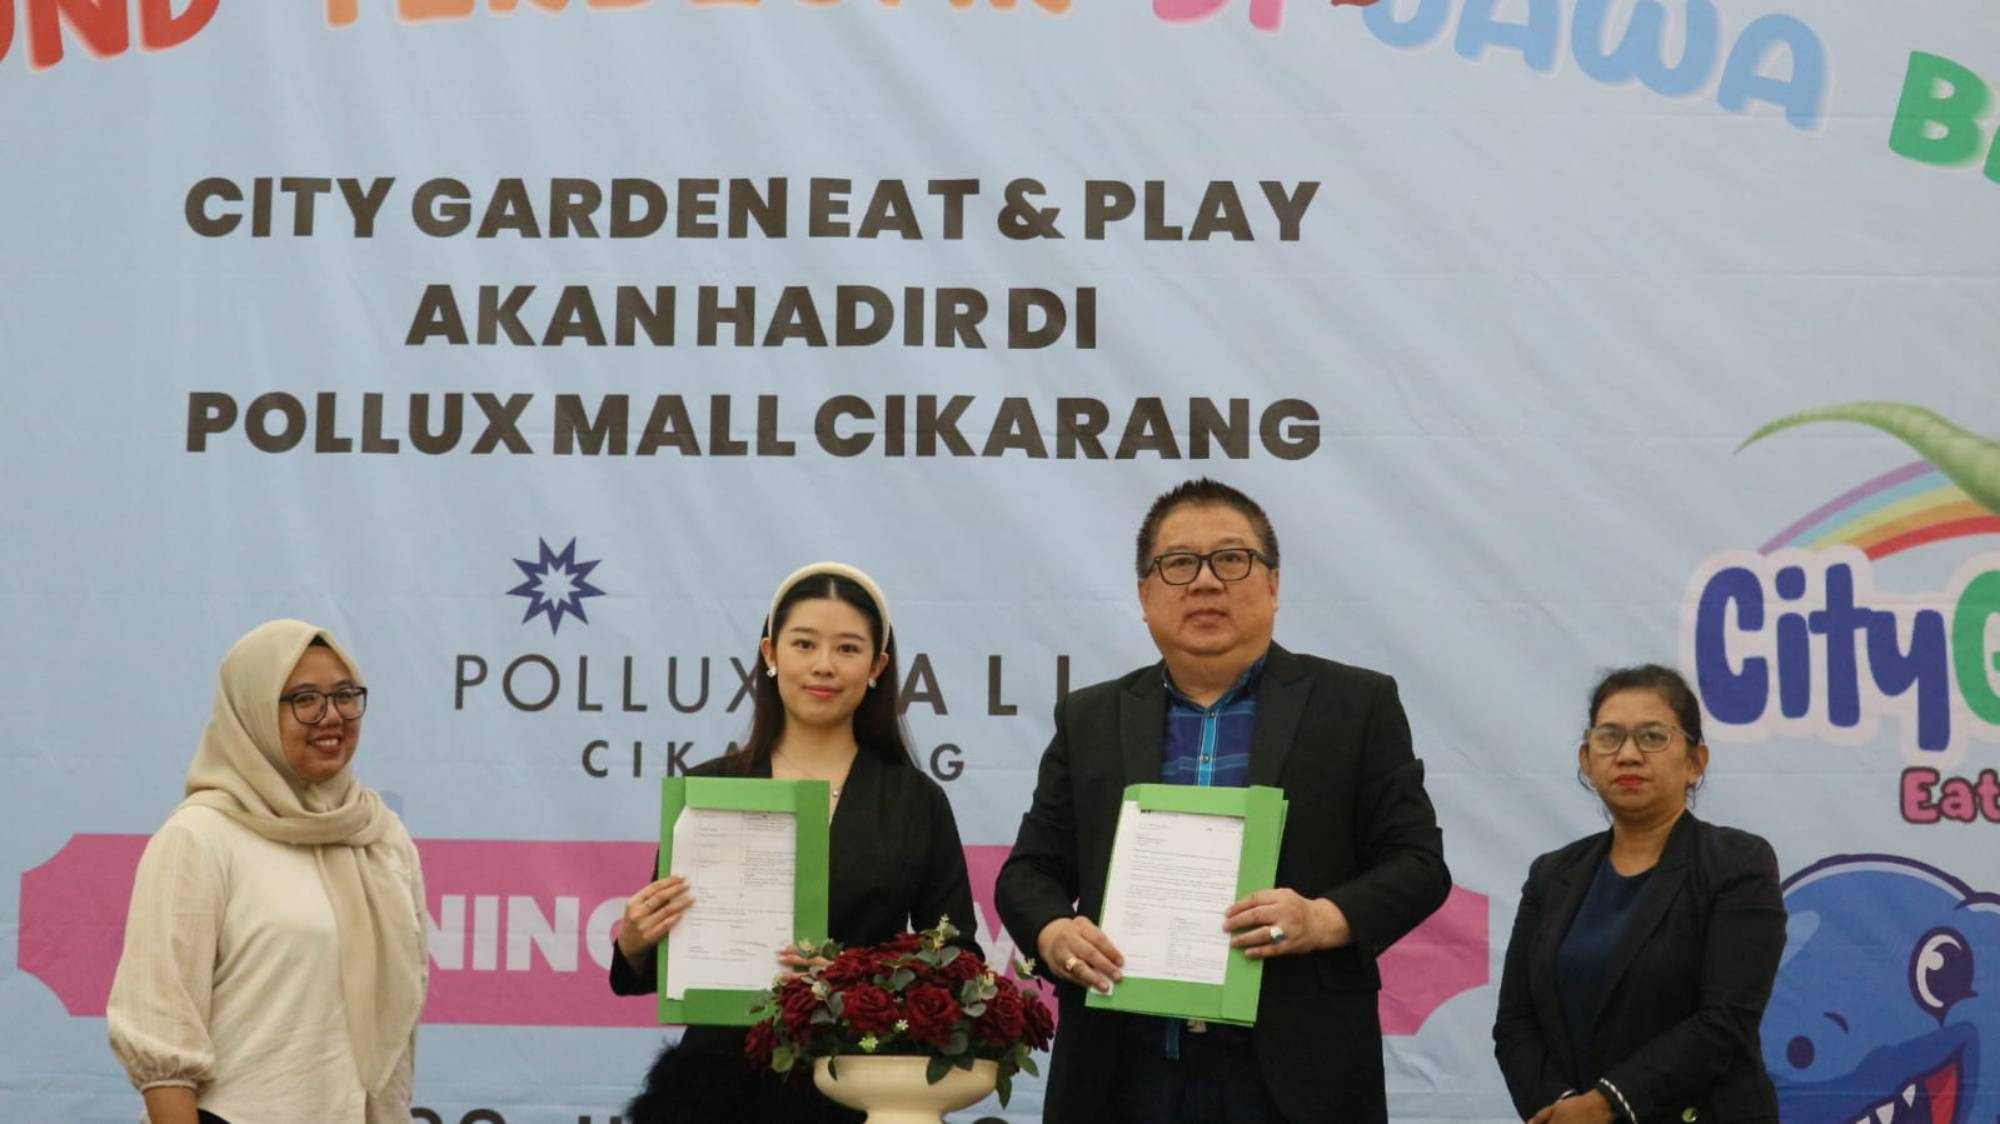 Hadir di Pollux Mall Cikarang, City Garden Eat And Play Jadi Playground Indoor Terbesar di Jabar